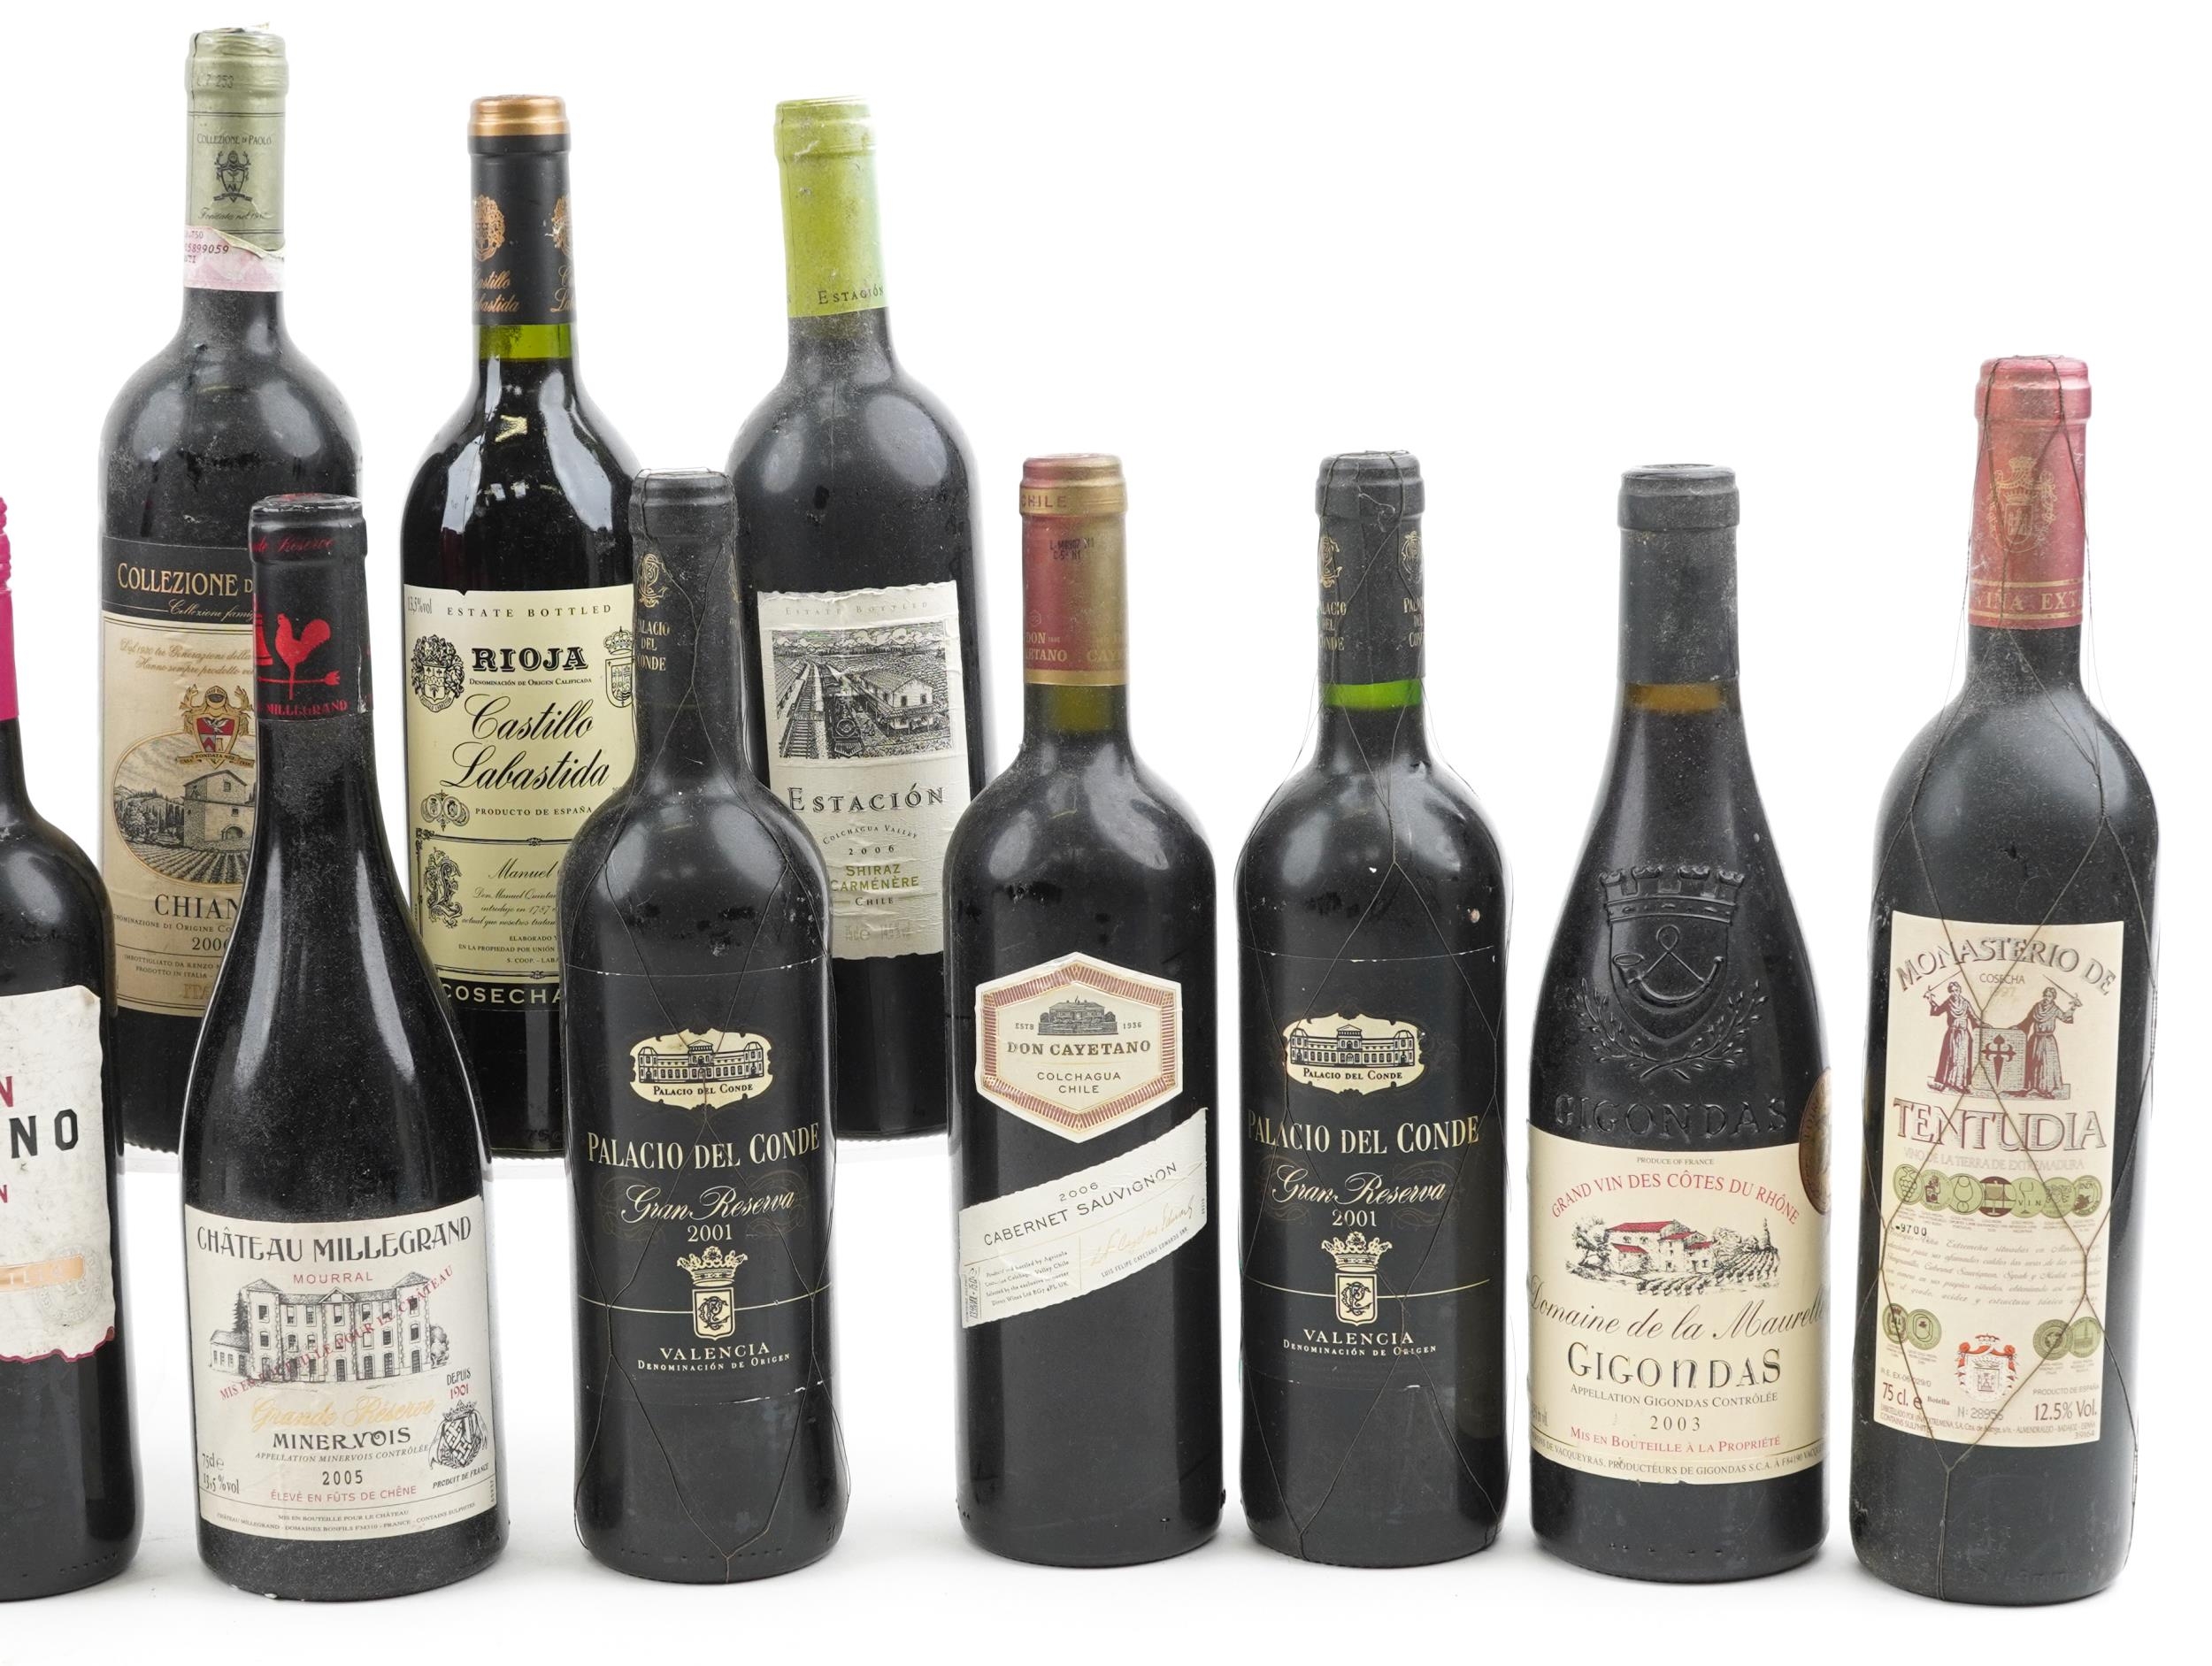 Twenty five bottles of red wine including 2003 Gigondas Cotes du Rhone - Image 4 of 4